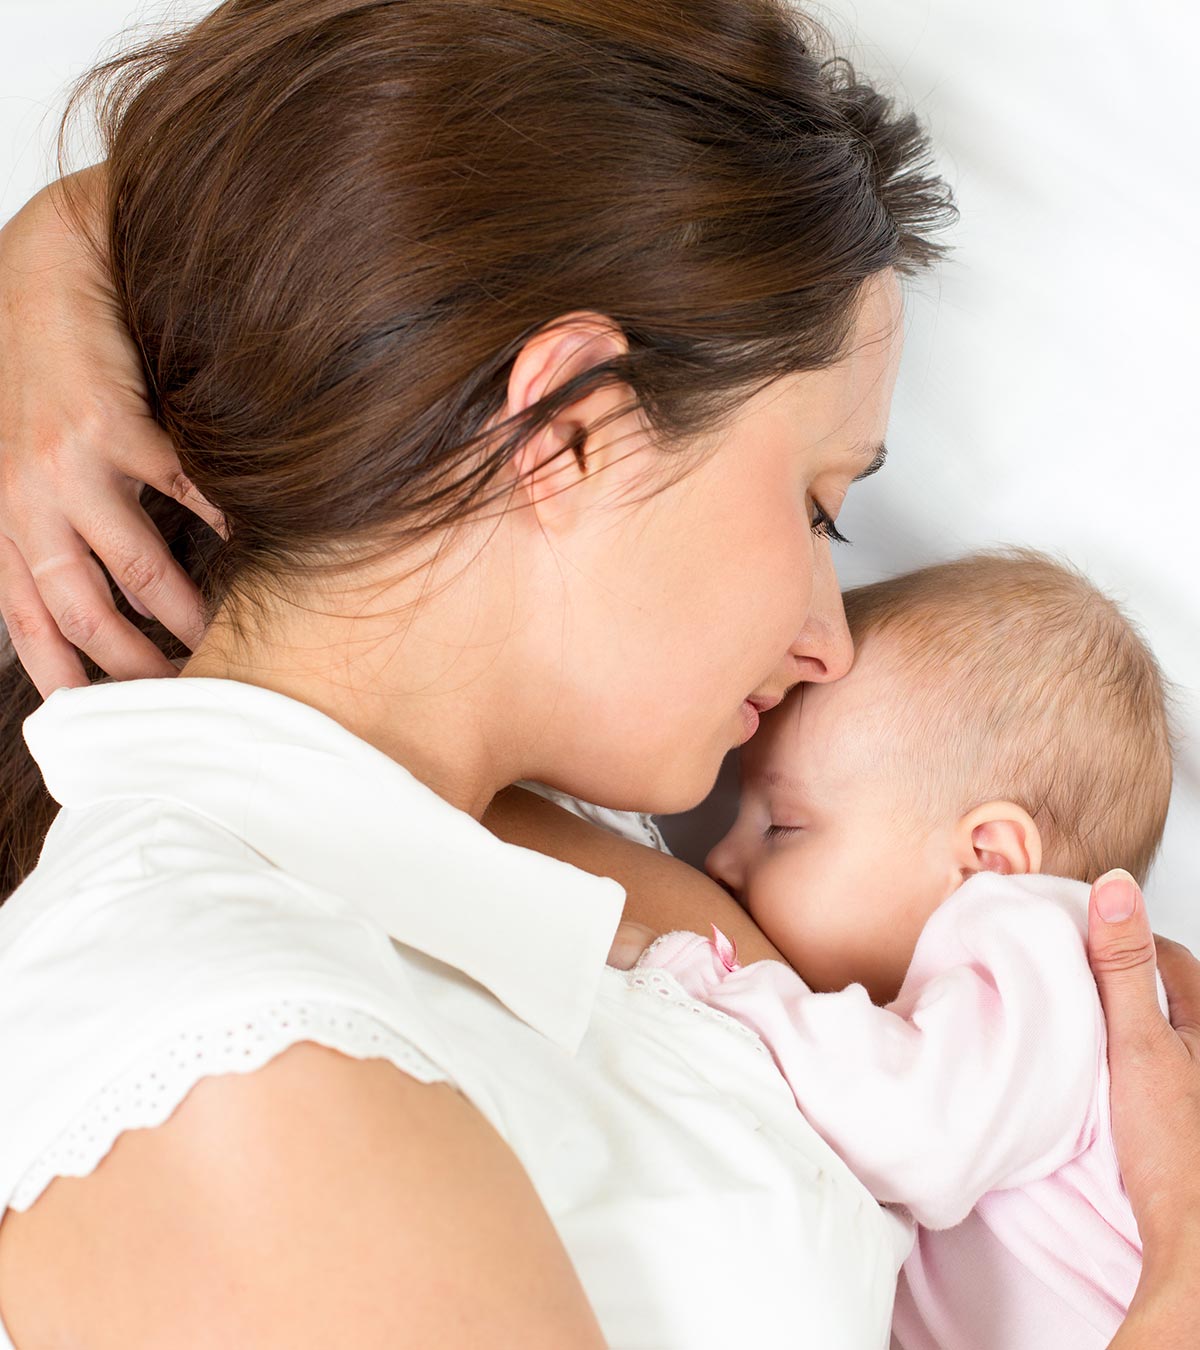 فوائد الرضاعة الطبيعية لمدة عامين للأم والجنين